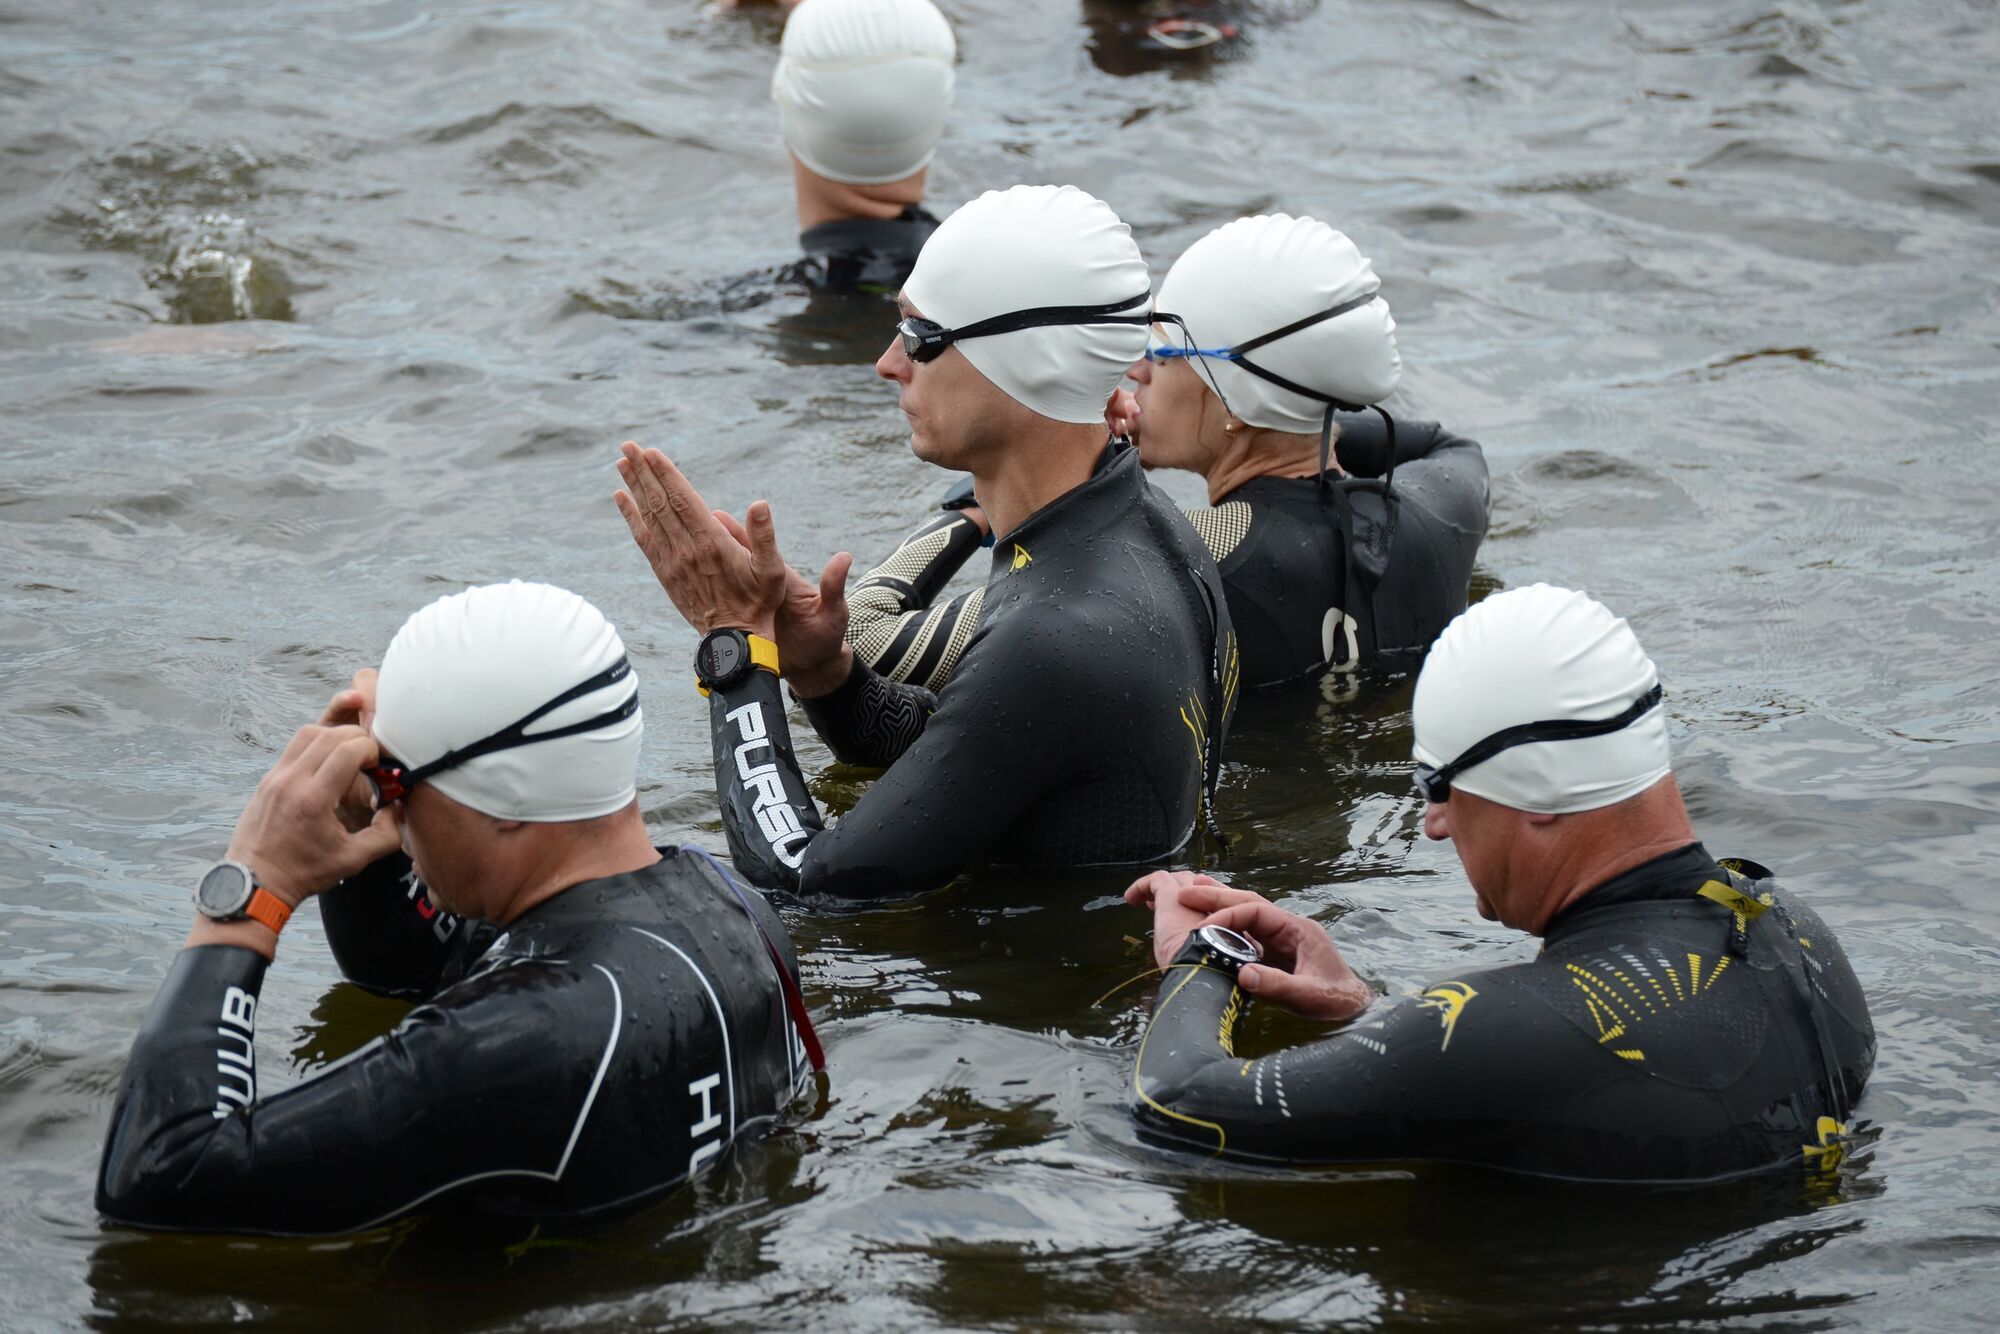 В "Dnipro triathlon fest" приняло участие рекордное количество спортсменов-любителей, самому старшему – более 60 лет